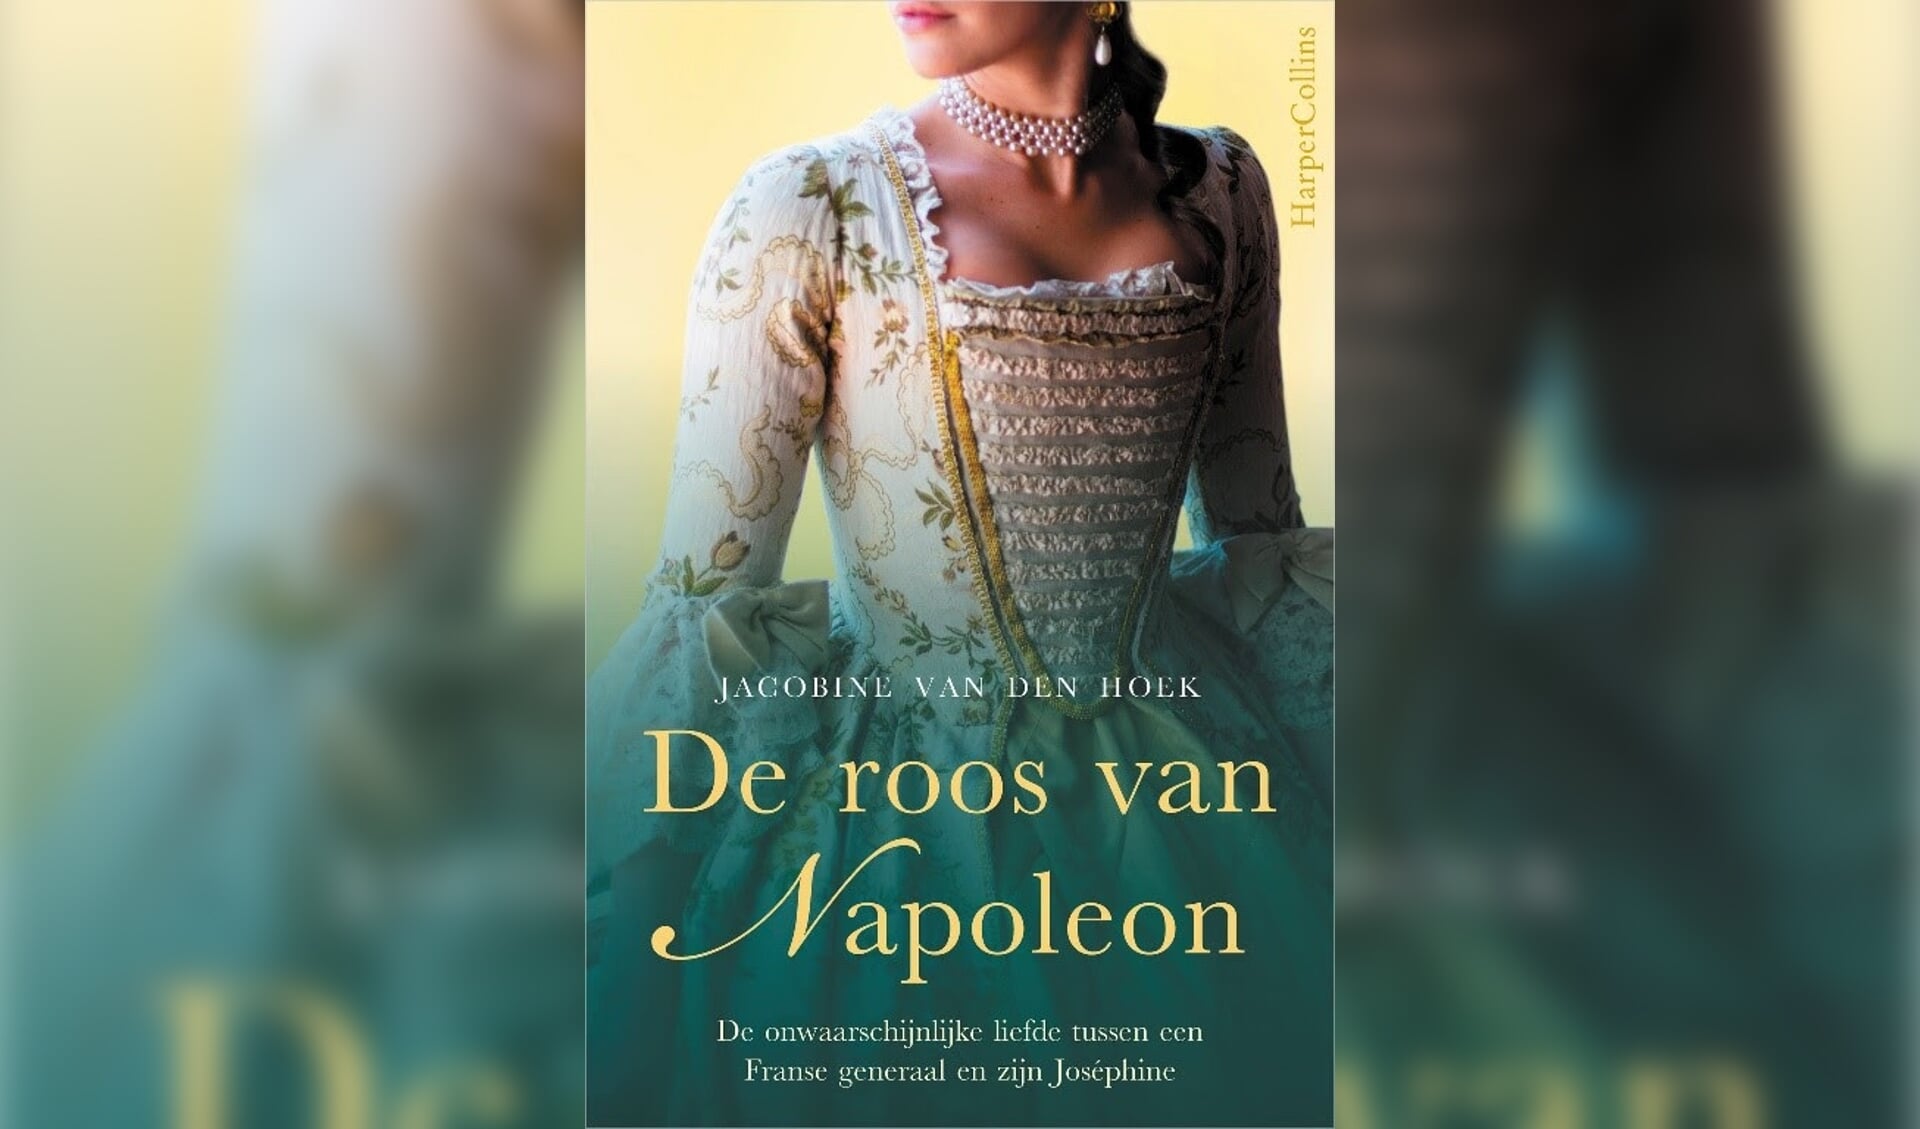 Het boek van Jacobine van den Hoek.